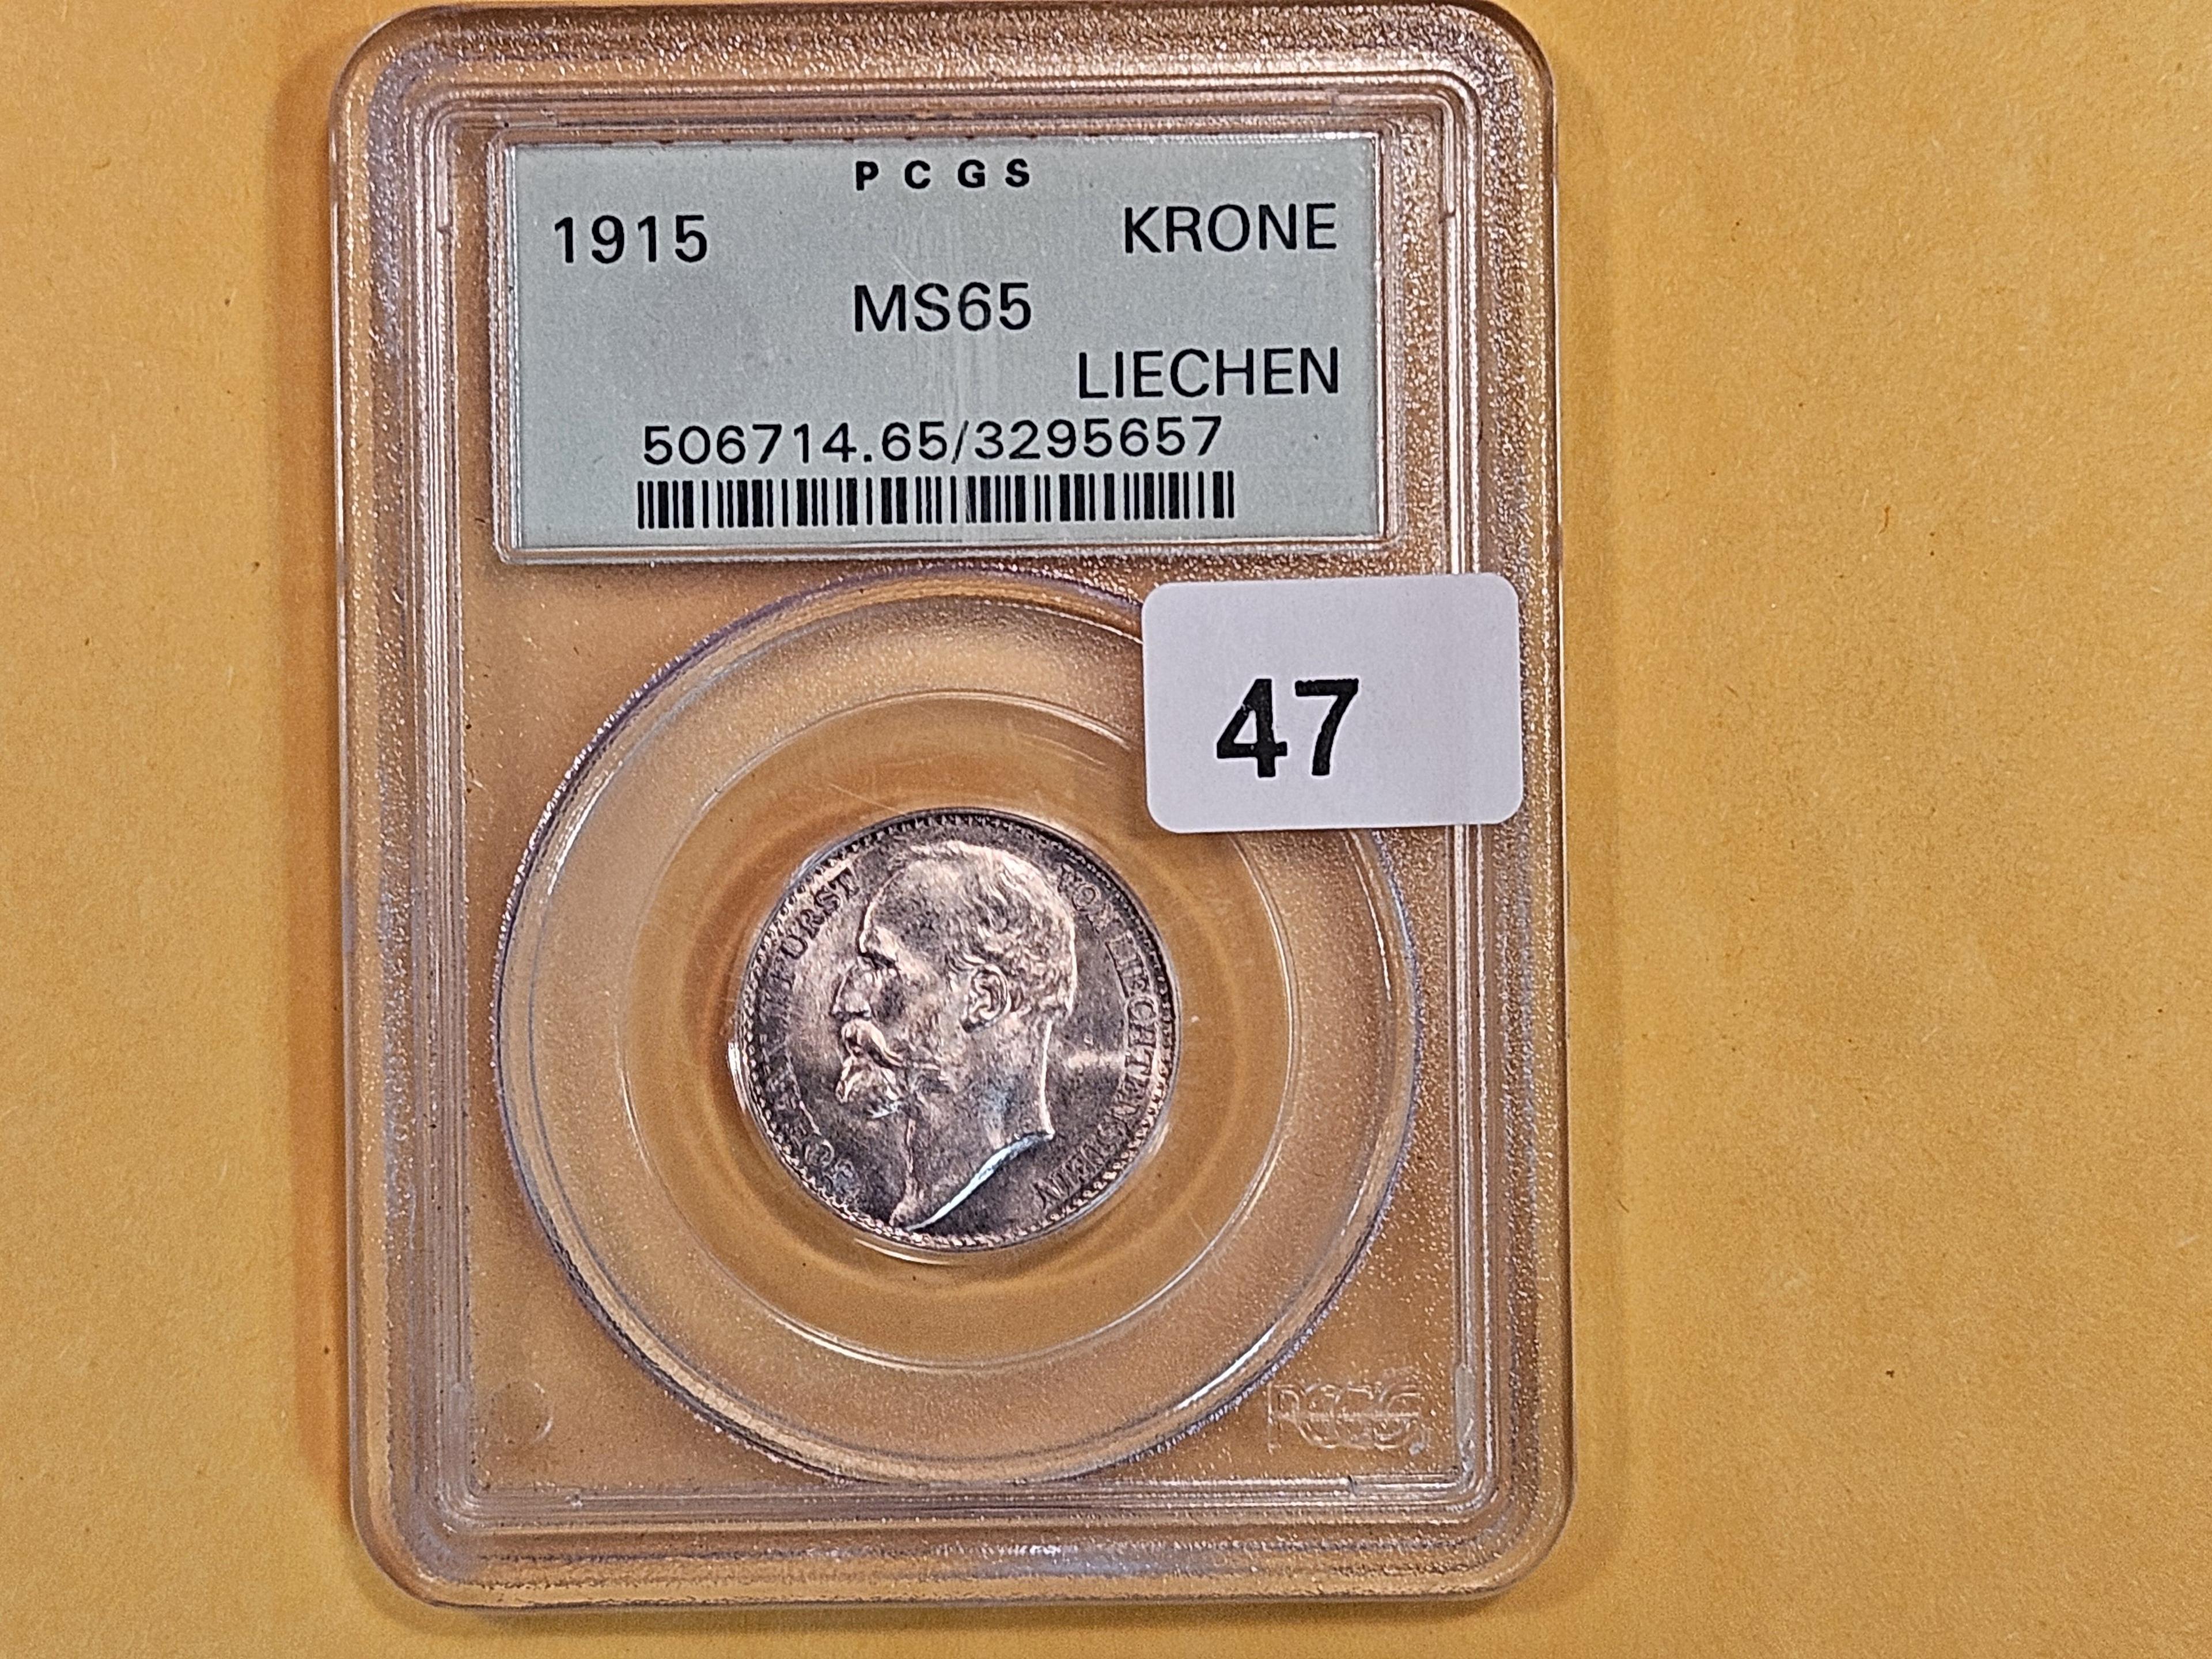 OGH! PCGS 1915 Lichtenstein silver krone in GEM Mint State 65